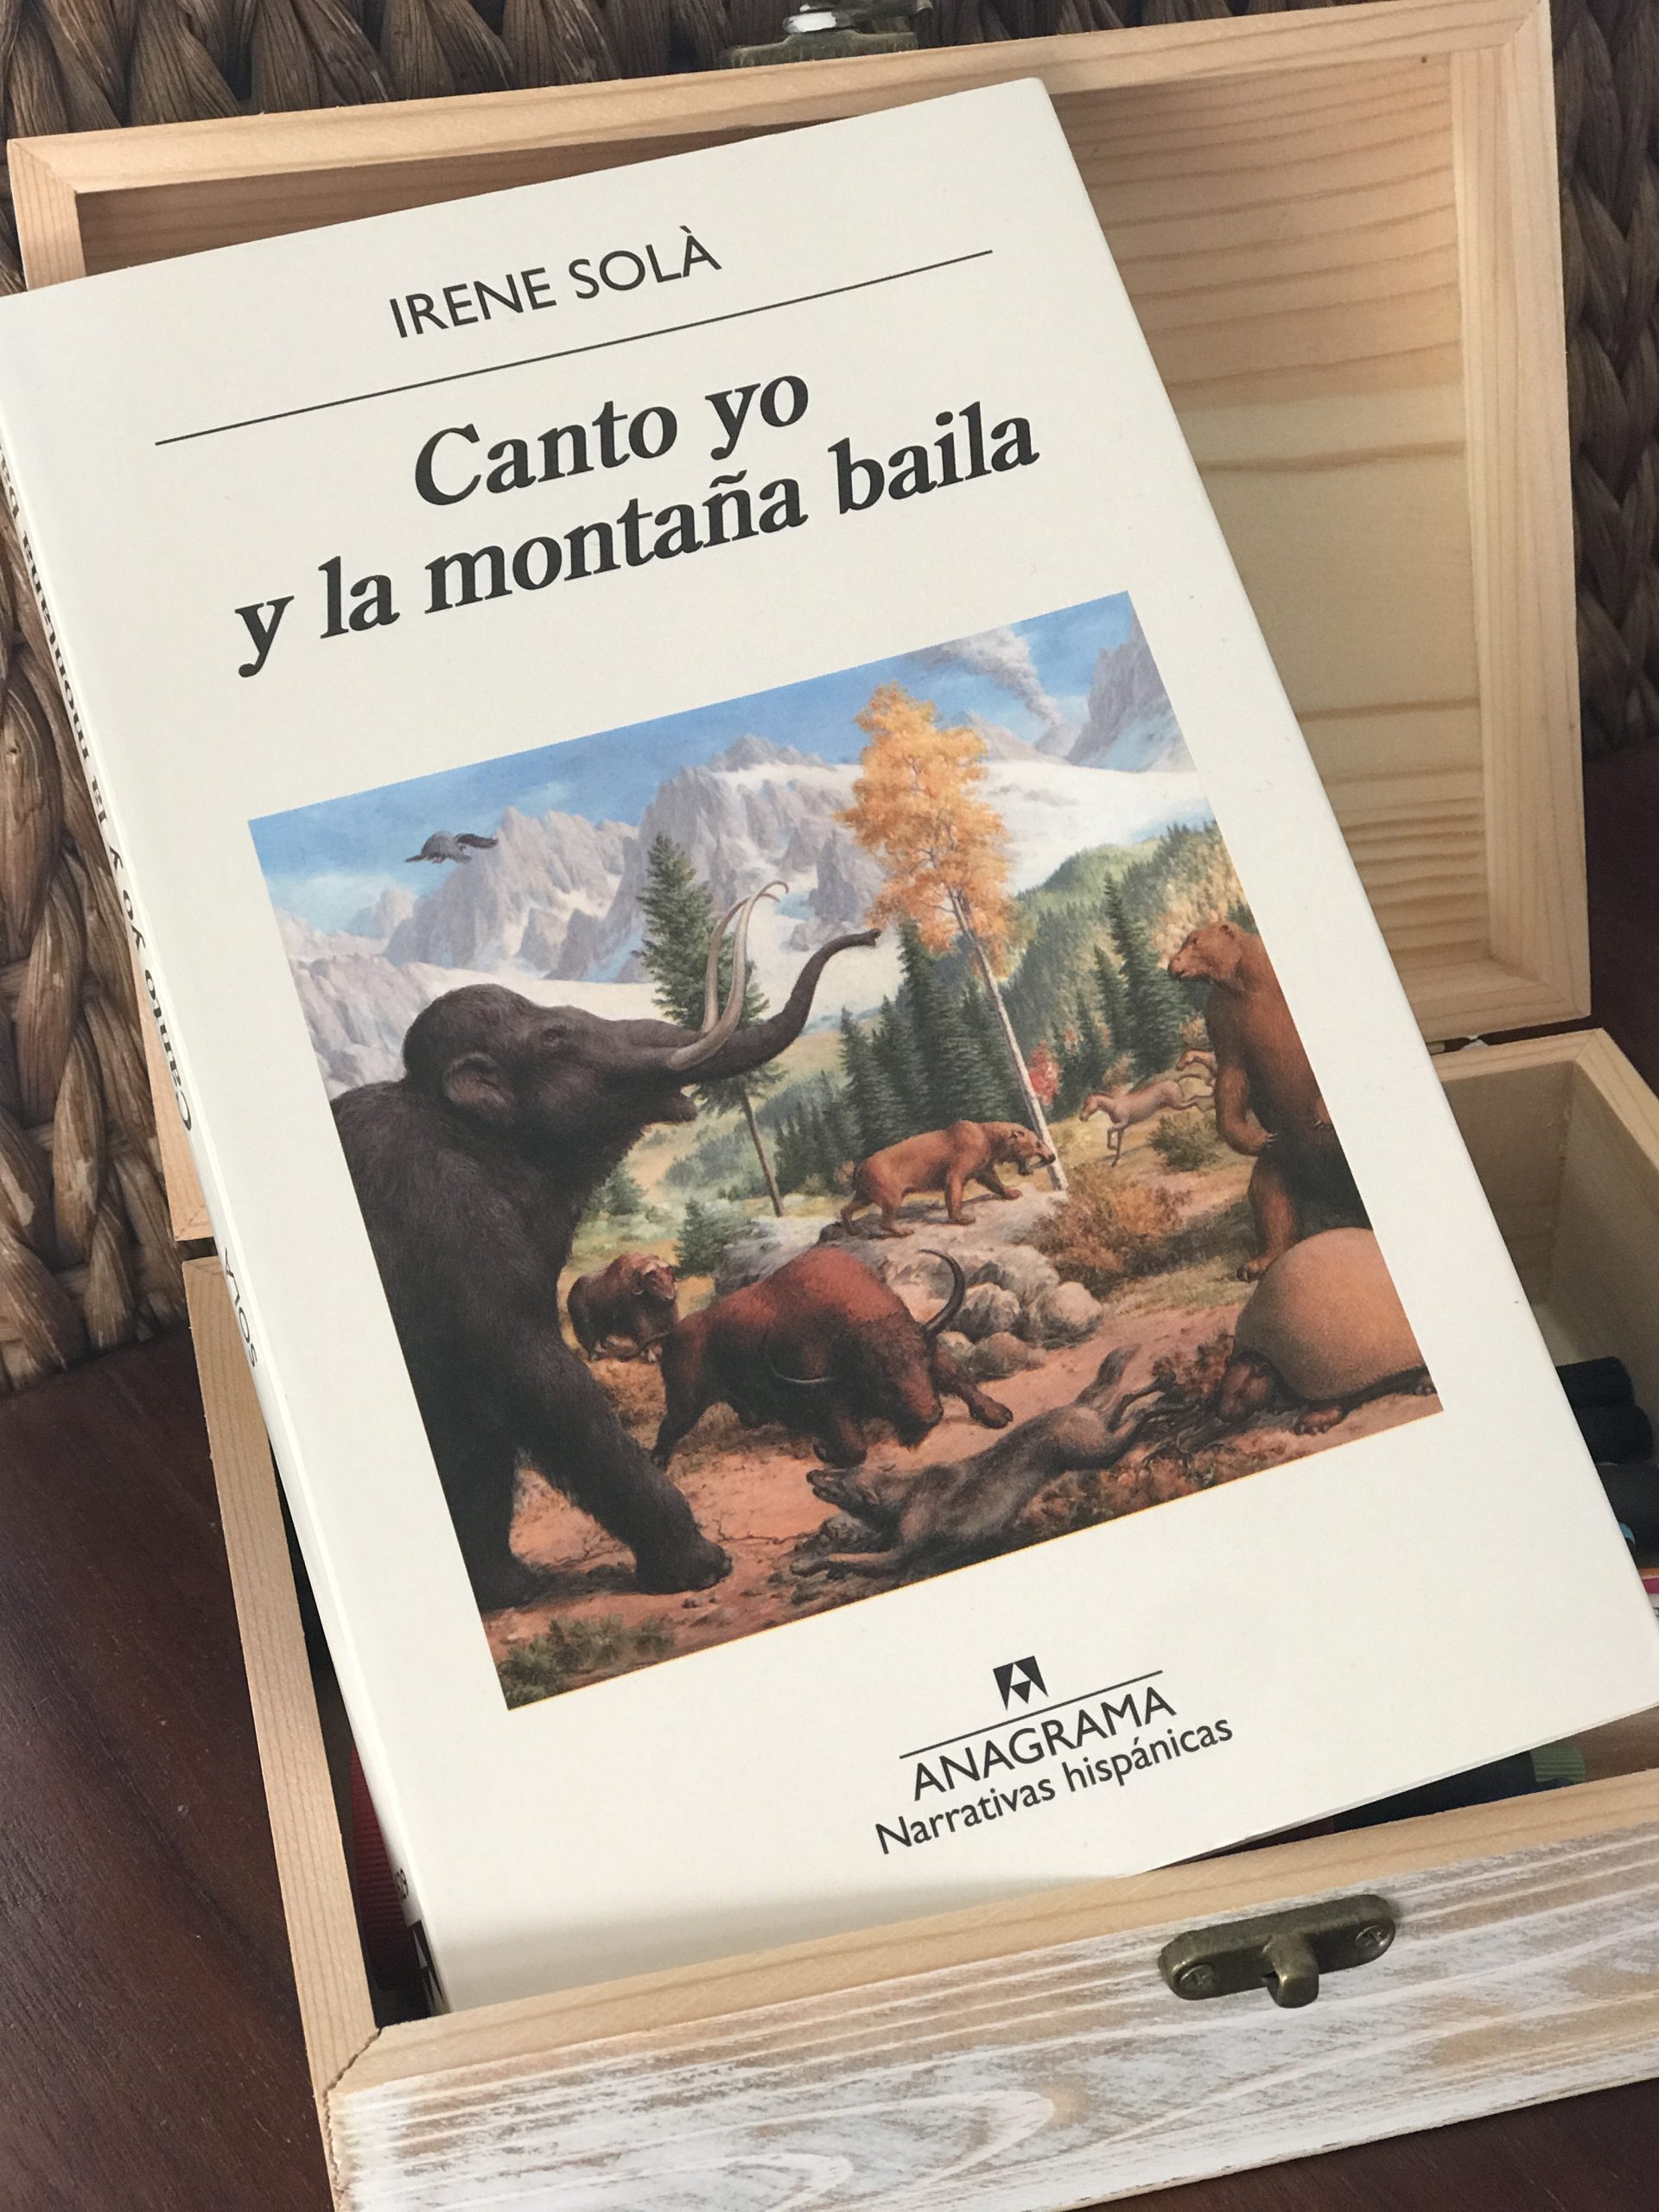 Narrativa del S. XXI (III): Irene Solá, Canto yo y la montaña